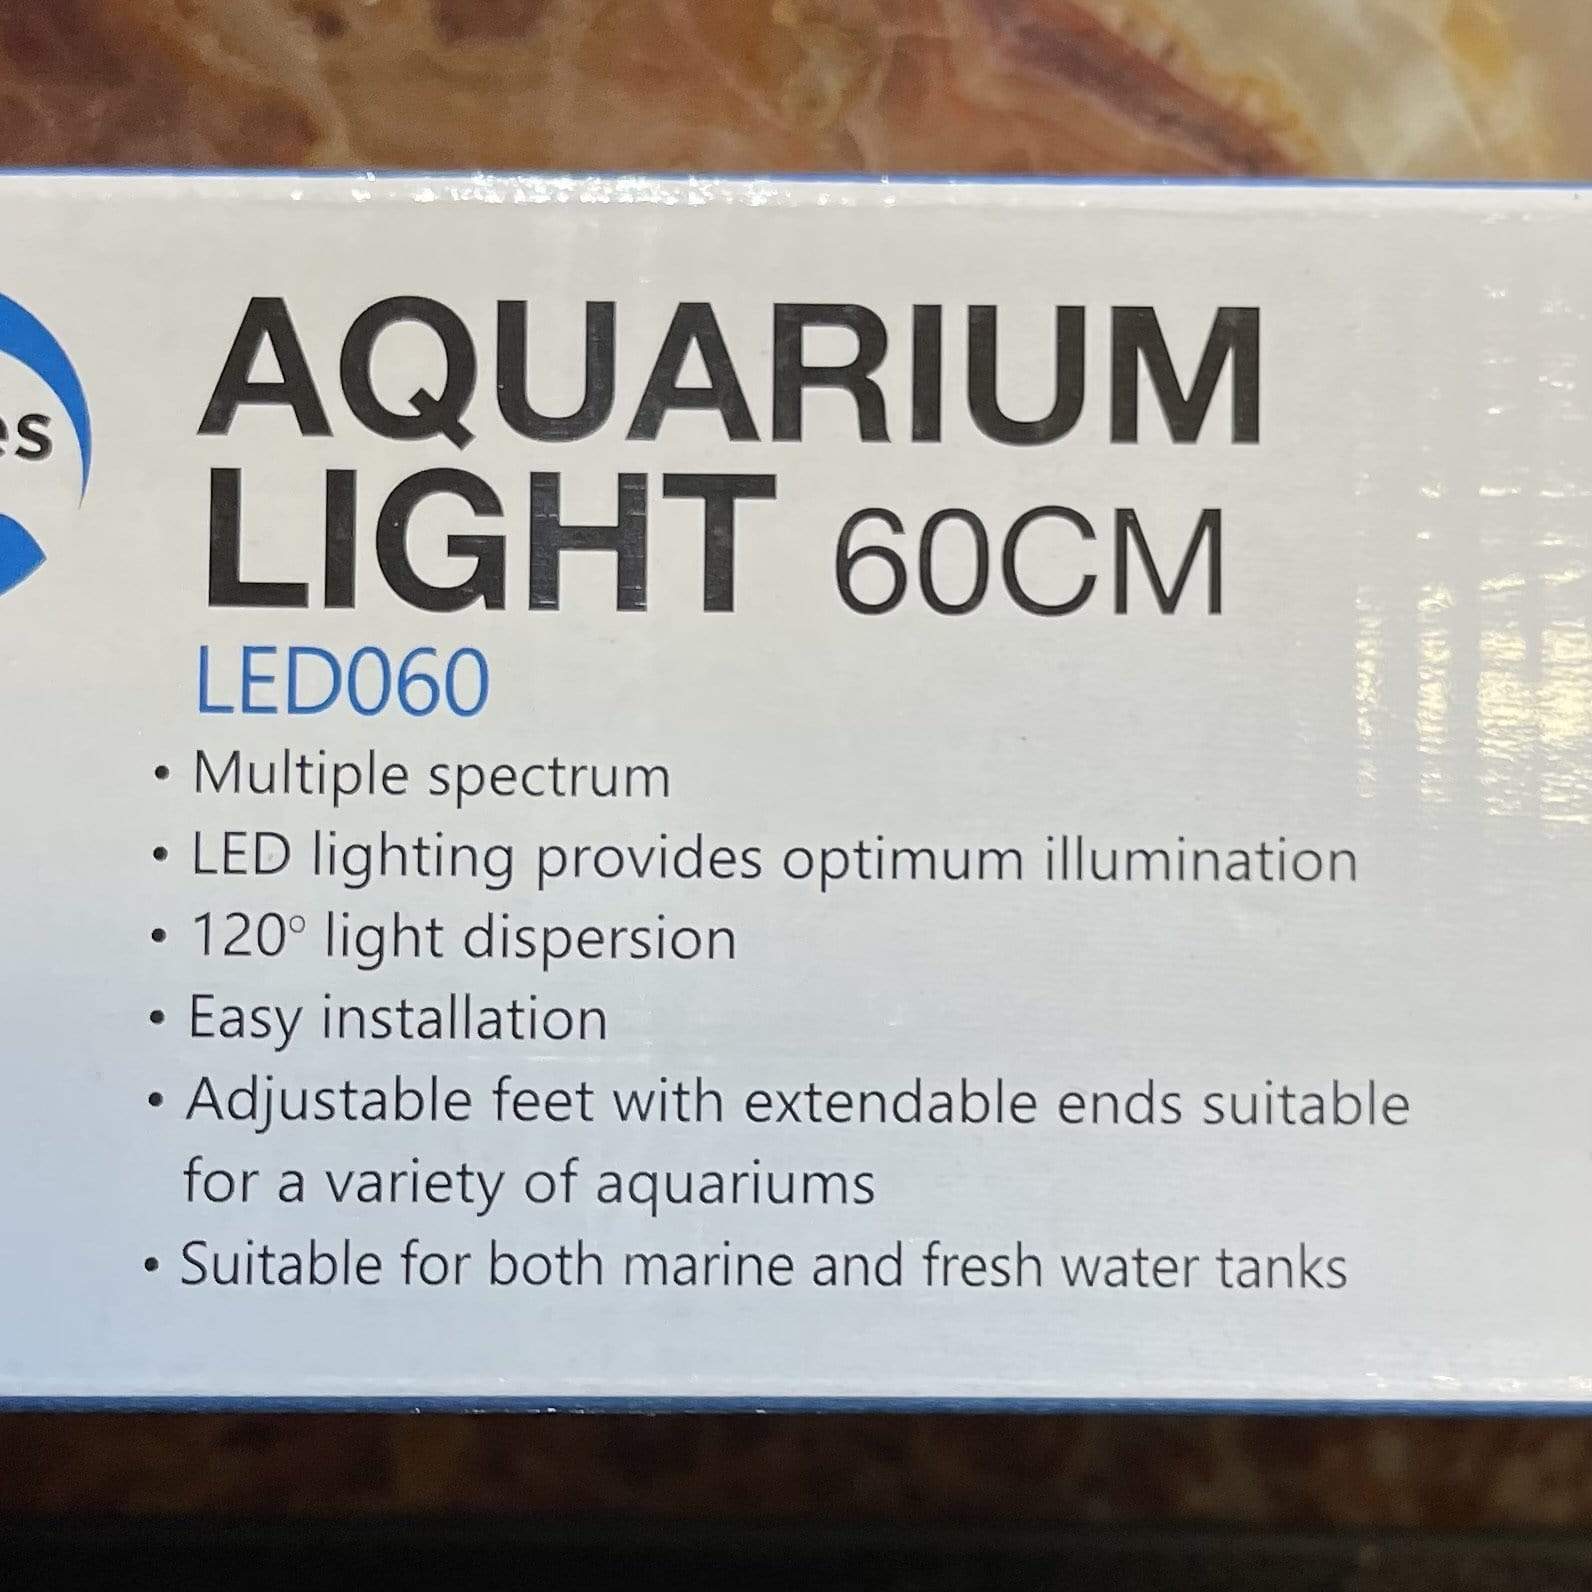 Scapeshop.com.au Aquarium Lights Pisces Aquatics LED Aquarium Light 60cm